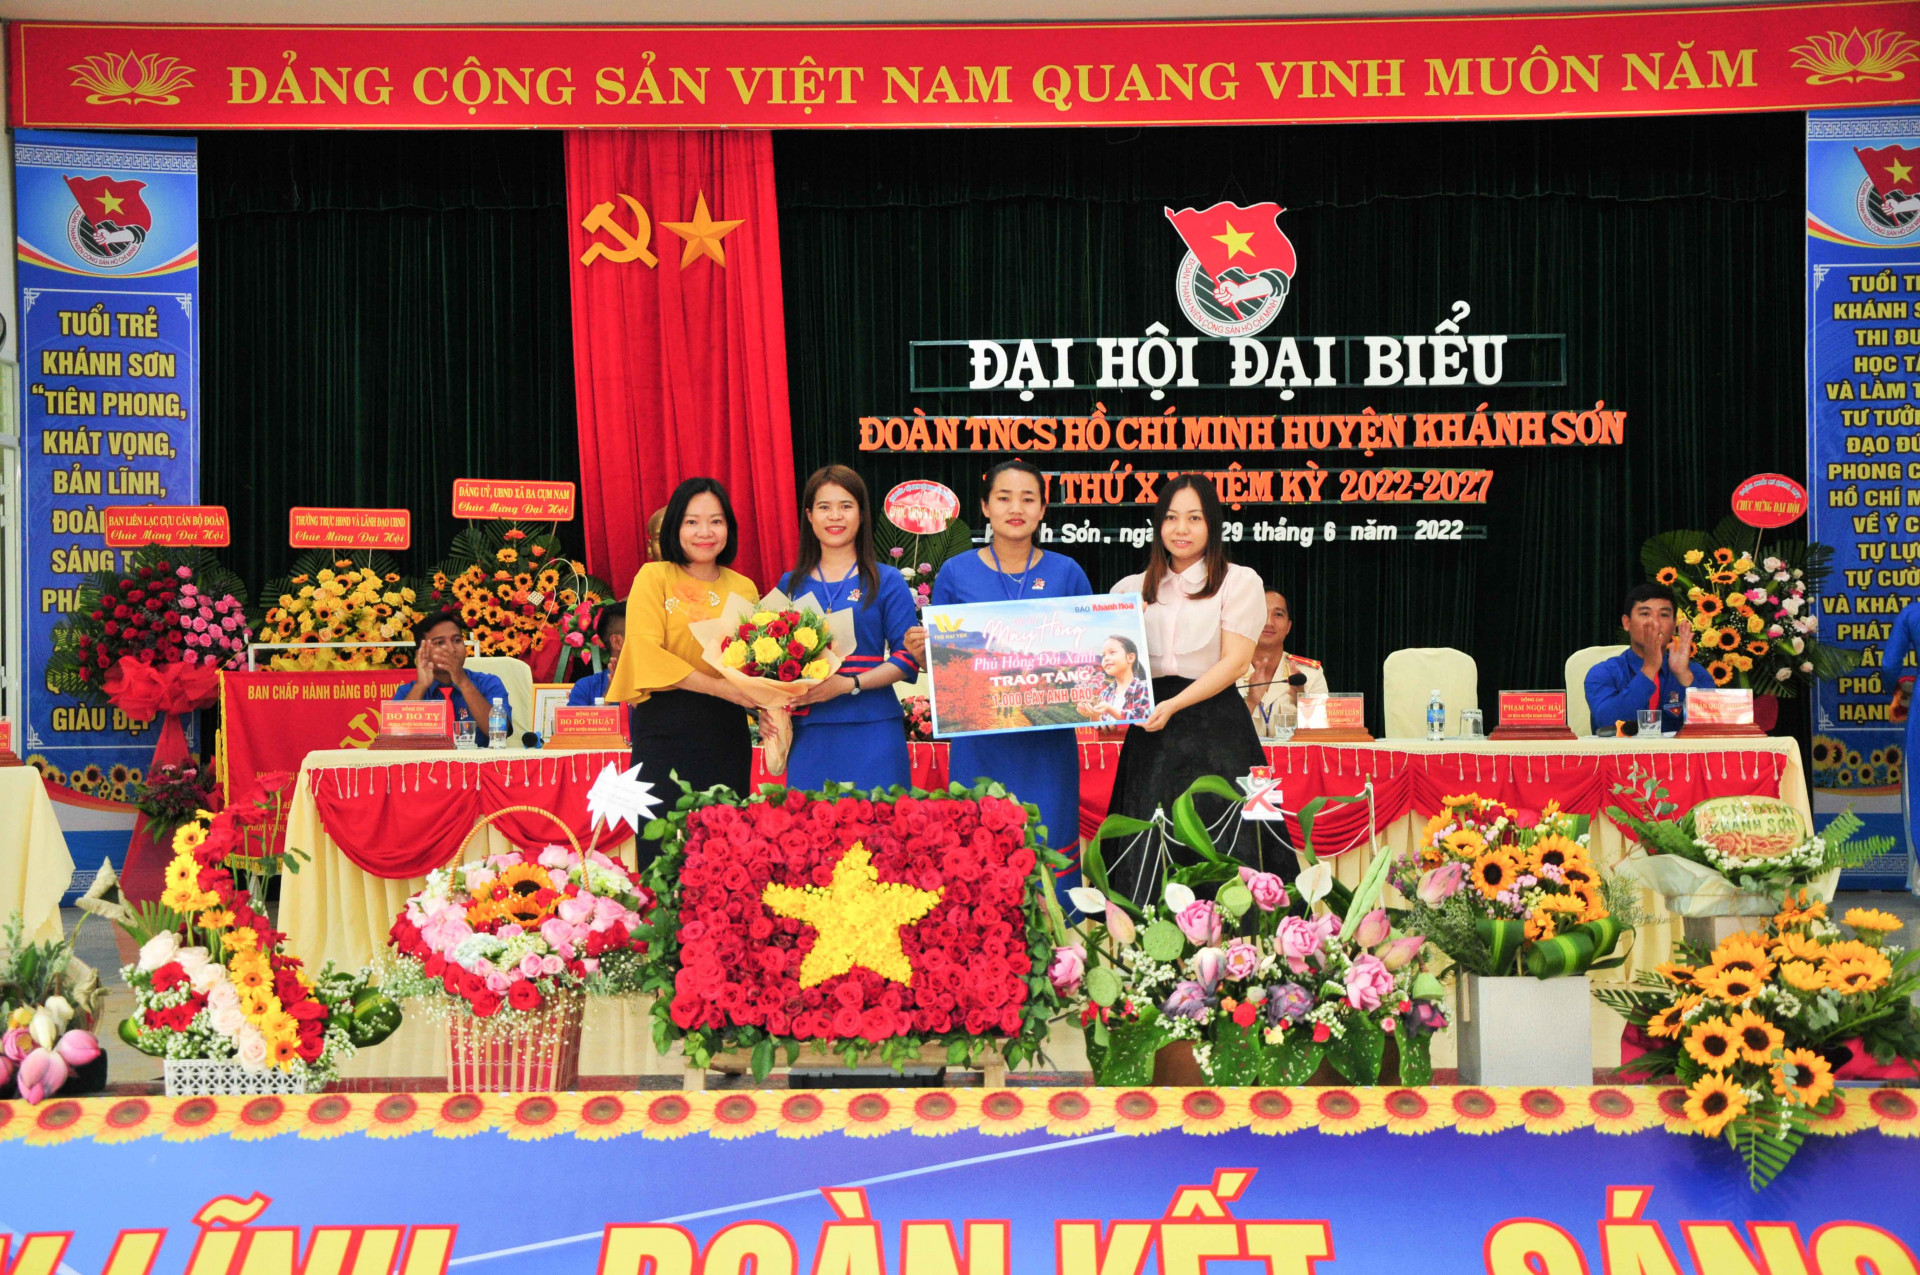 Lãnh đạo Báo Khánh Hoà cùng Công ty TNHH MTV Hải Yến trao hỗ trợ Huyện đoàn Khánh Sơn 1.000 cây hoa anh đào để thực hiện trồng cây xanh tạo cảnh quan xanh - sạch - đẹp cho địa phương